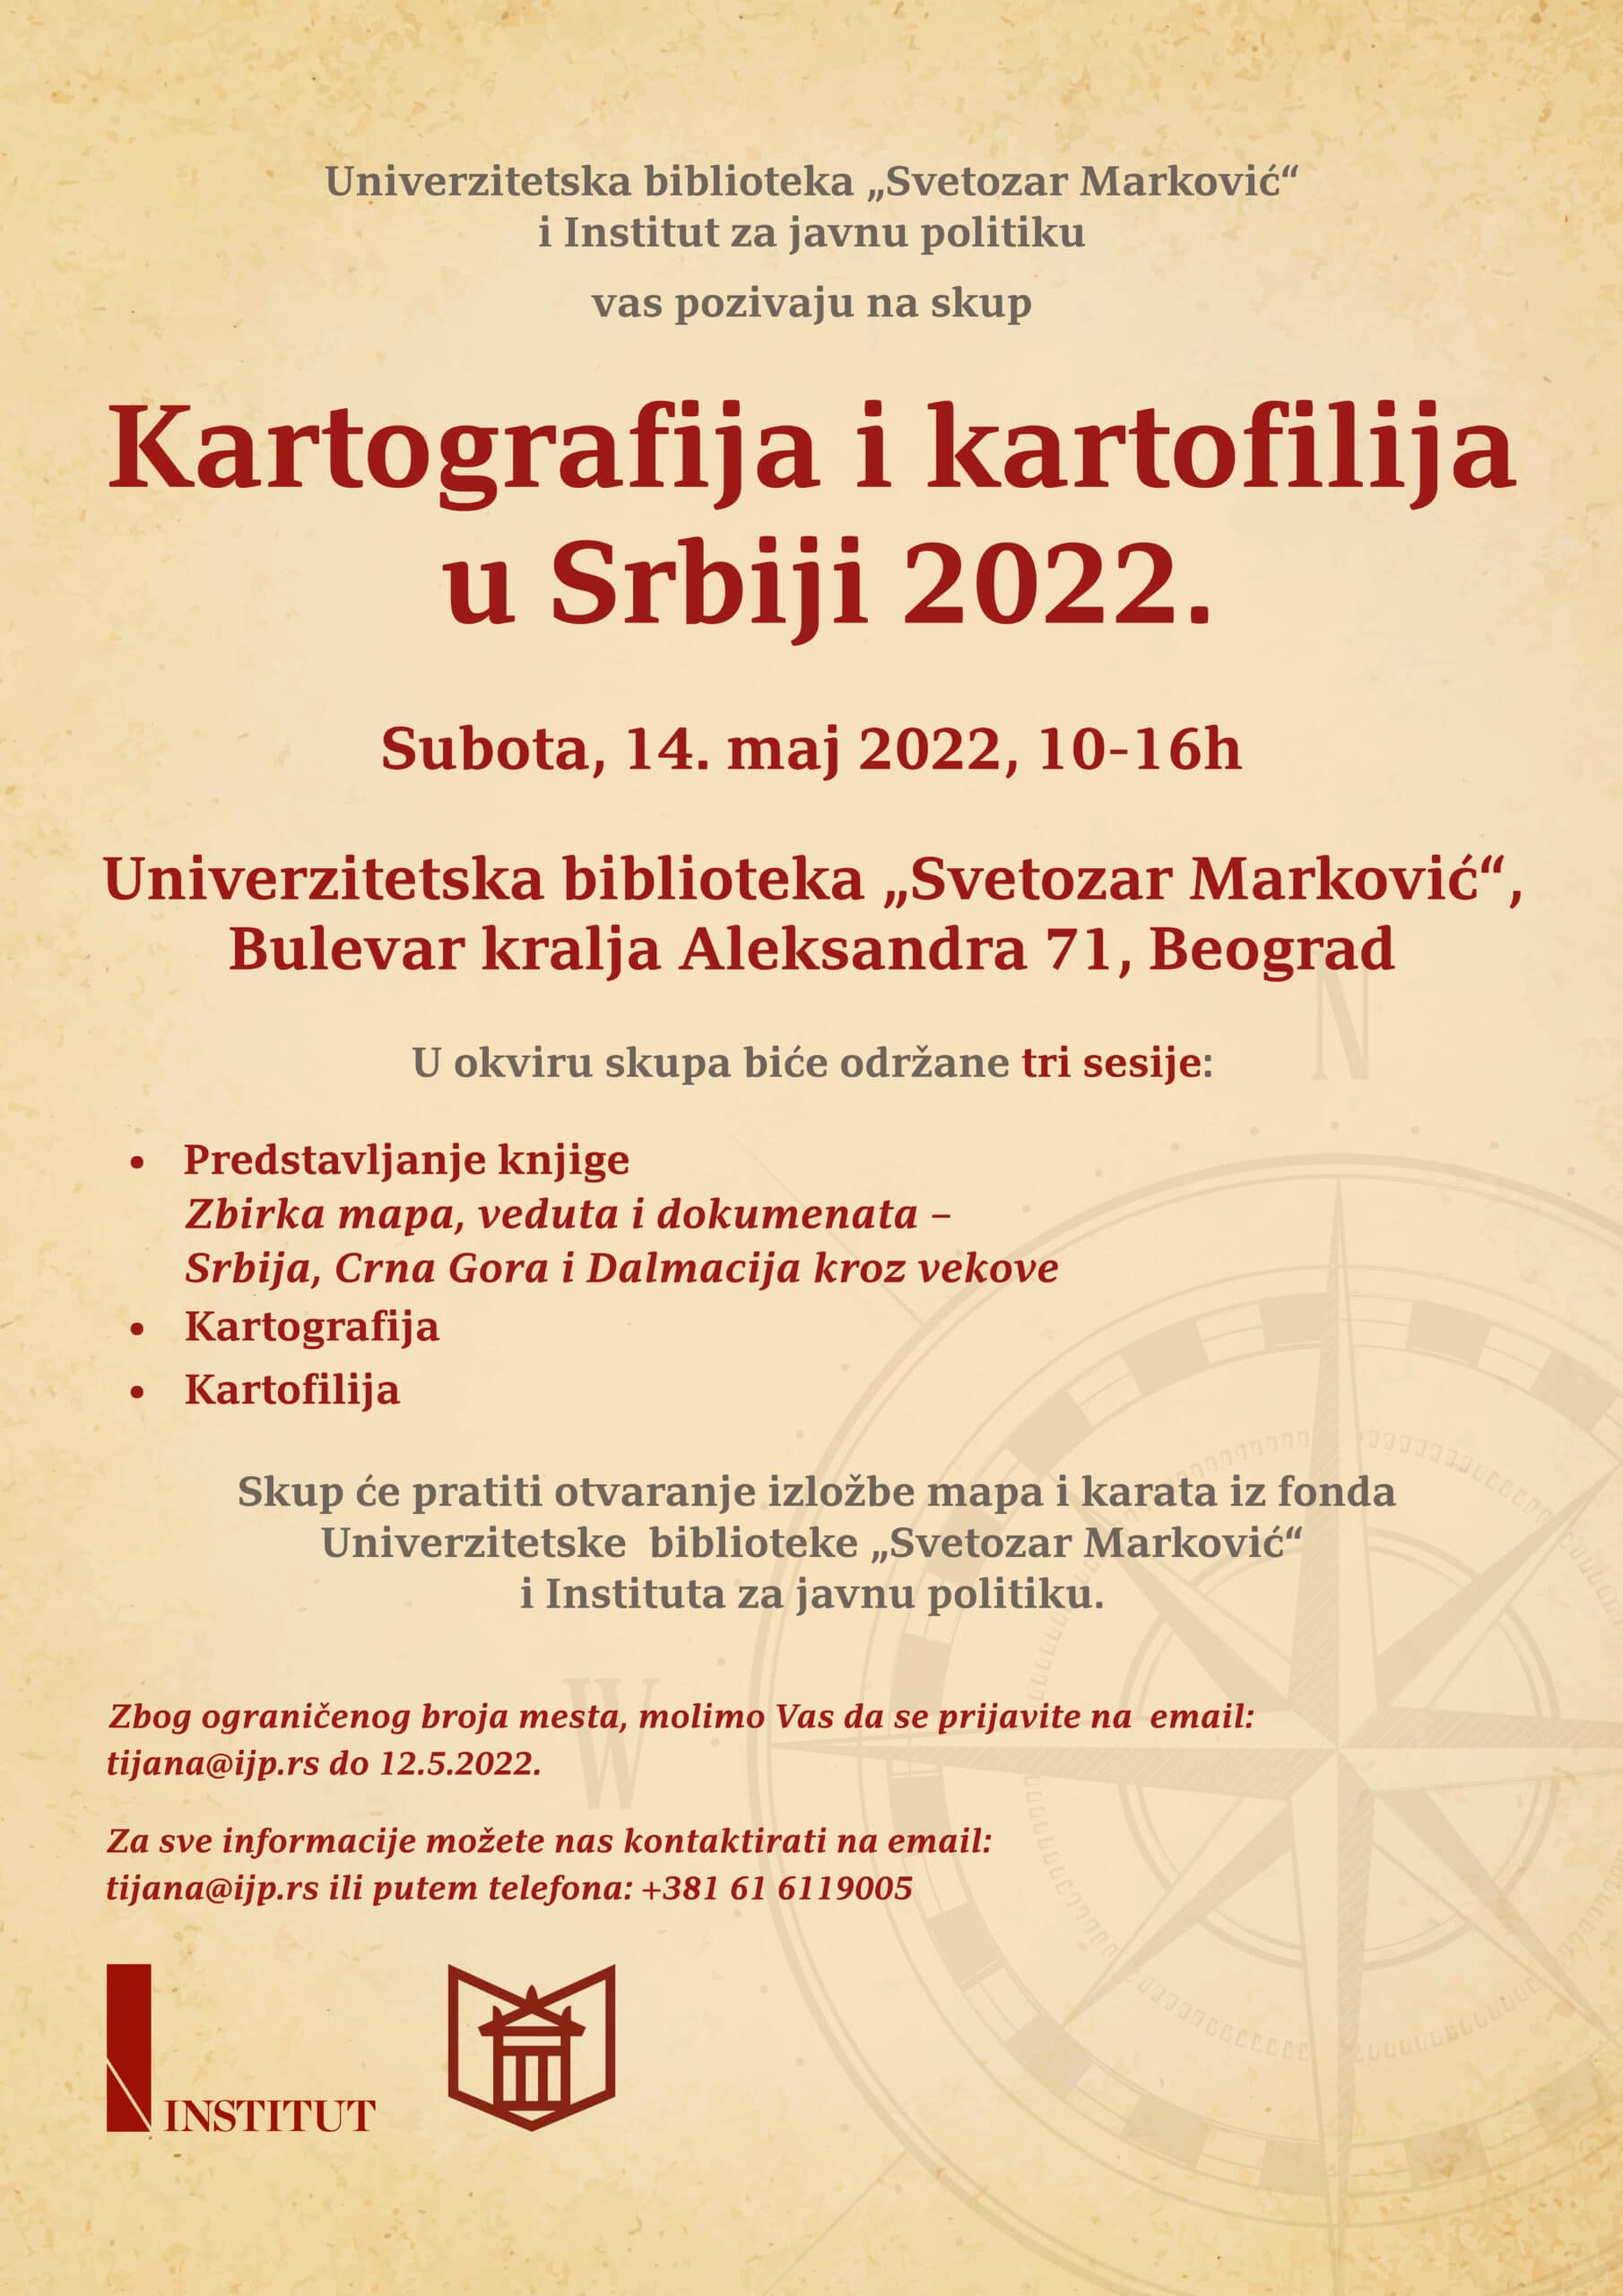 Skup "Kartografija i kartofilija u Srbiji 2022." 14. maja u Univerzitetskoj biblioteci „Svetozar Marković“ 2